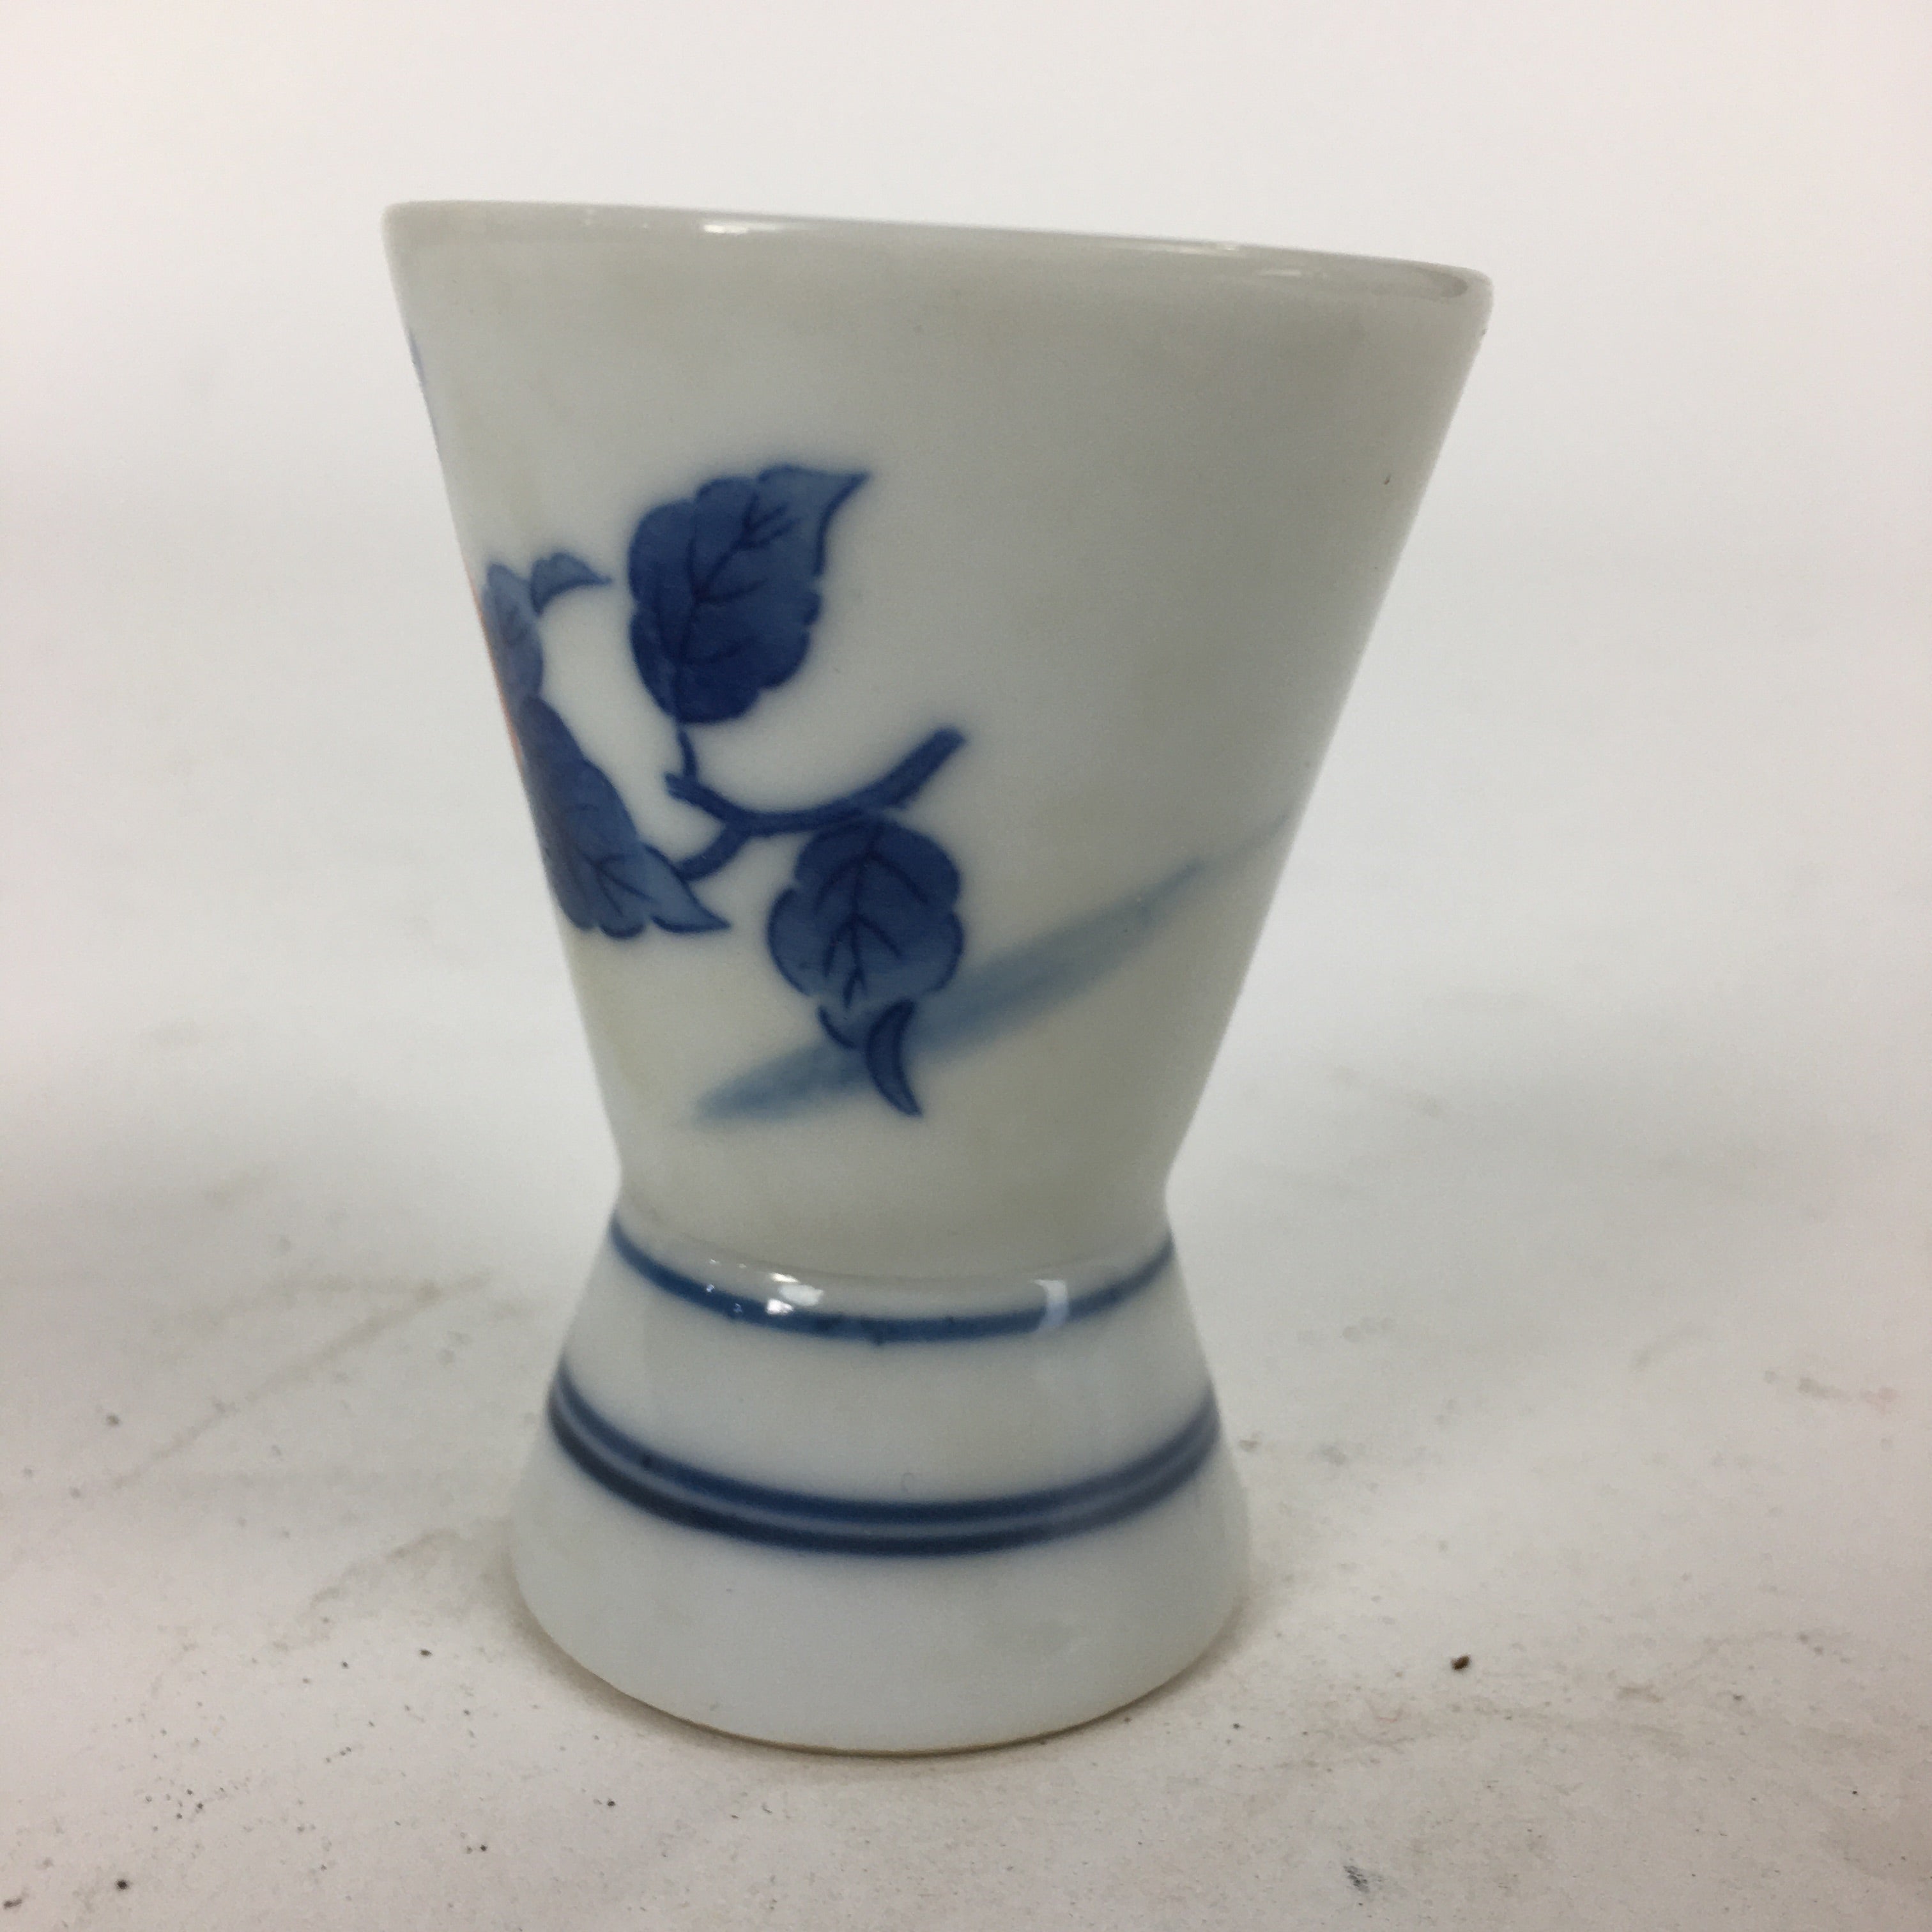 Japanese Porcelain Sake Cup Vtg Sometsuke Blue Flower Guinomi Ochoko G11